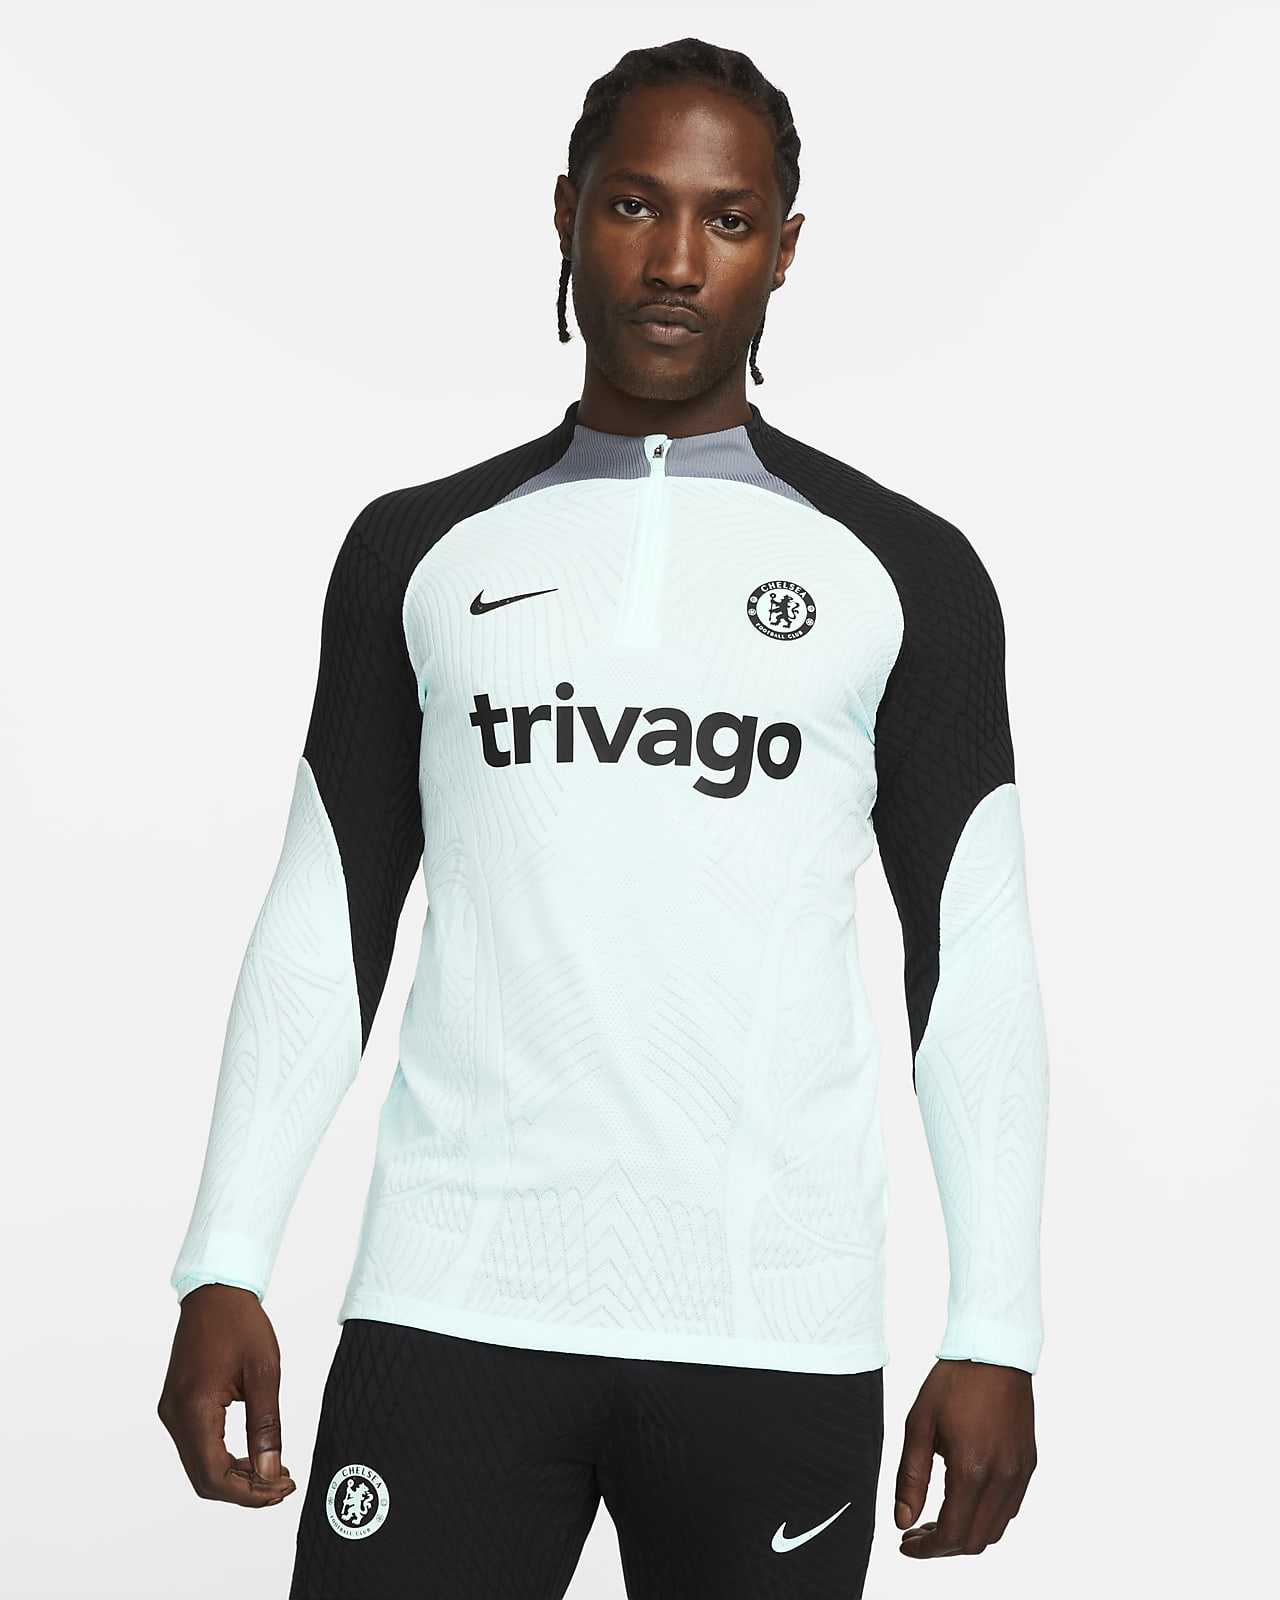 Ανδρική ποδοσφαιρική μπλούζα προπόνησης Nike Dri-FIT ADV εναλλακτικής εμφάνισης Τσέλσι Strike Elite